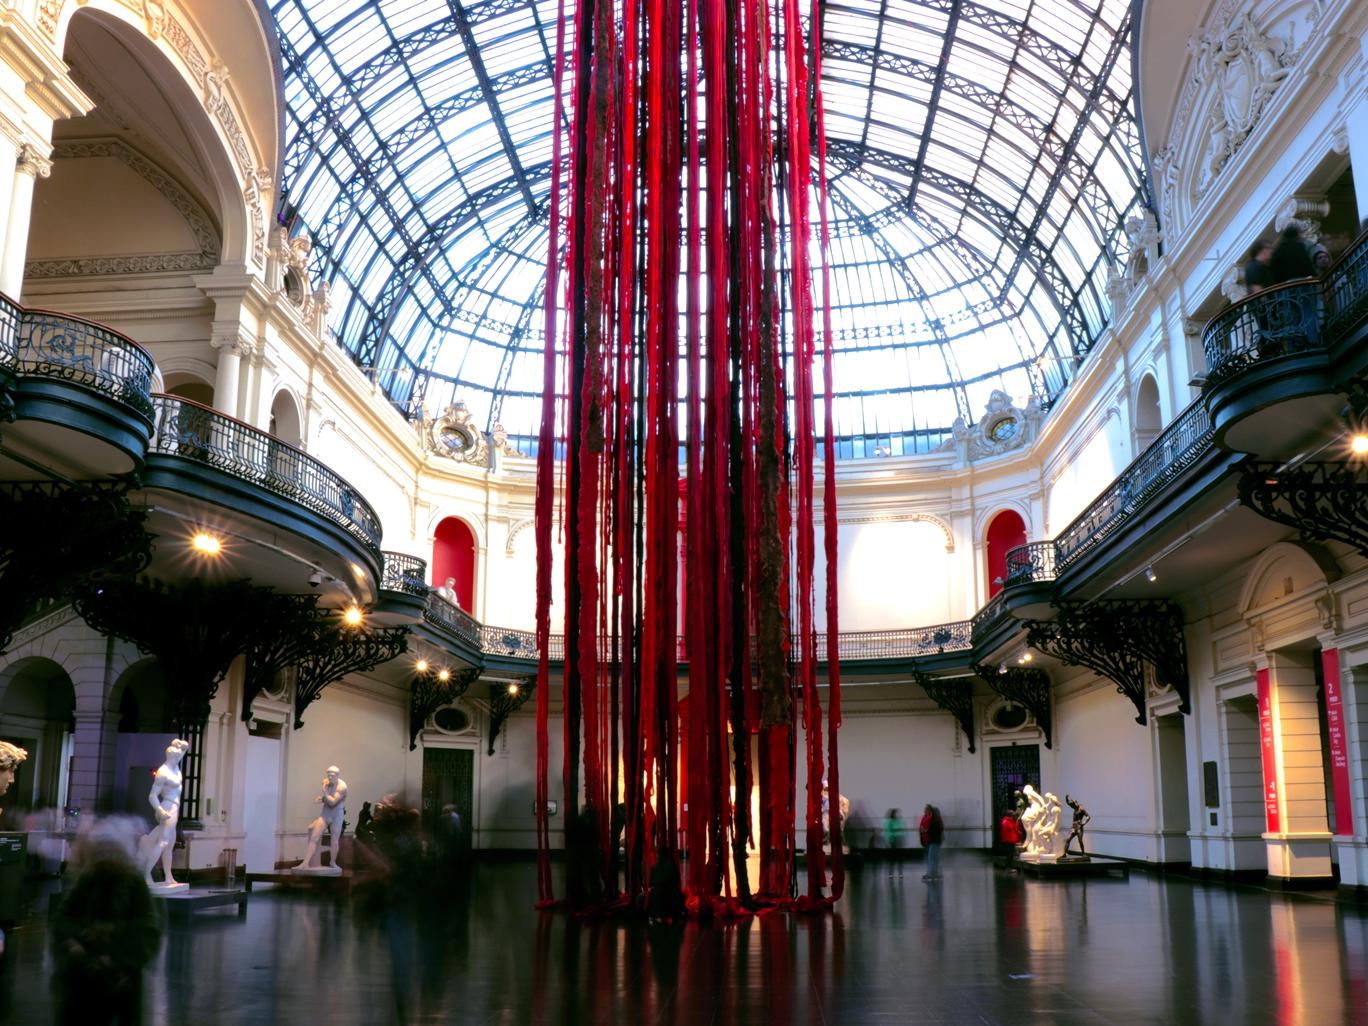 Fotografía del hall del Museo con instalación colgante hecha con lanas rojas